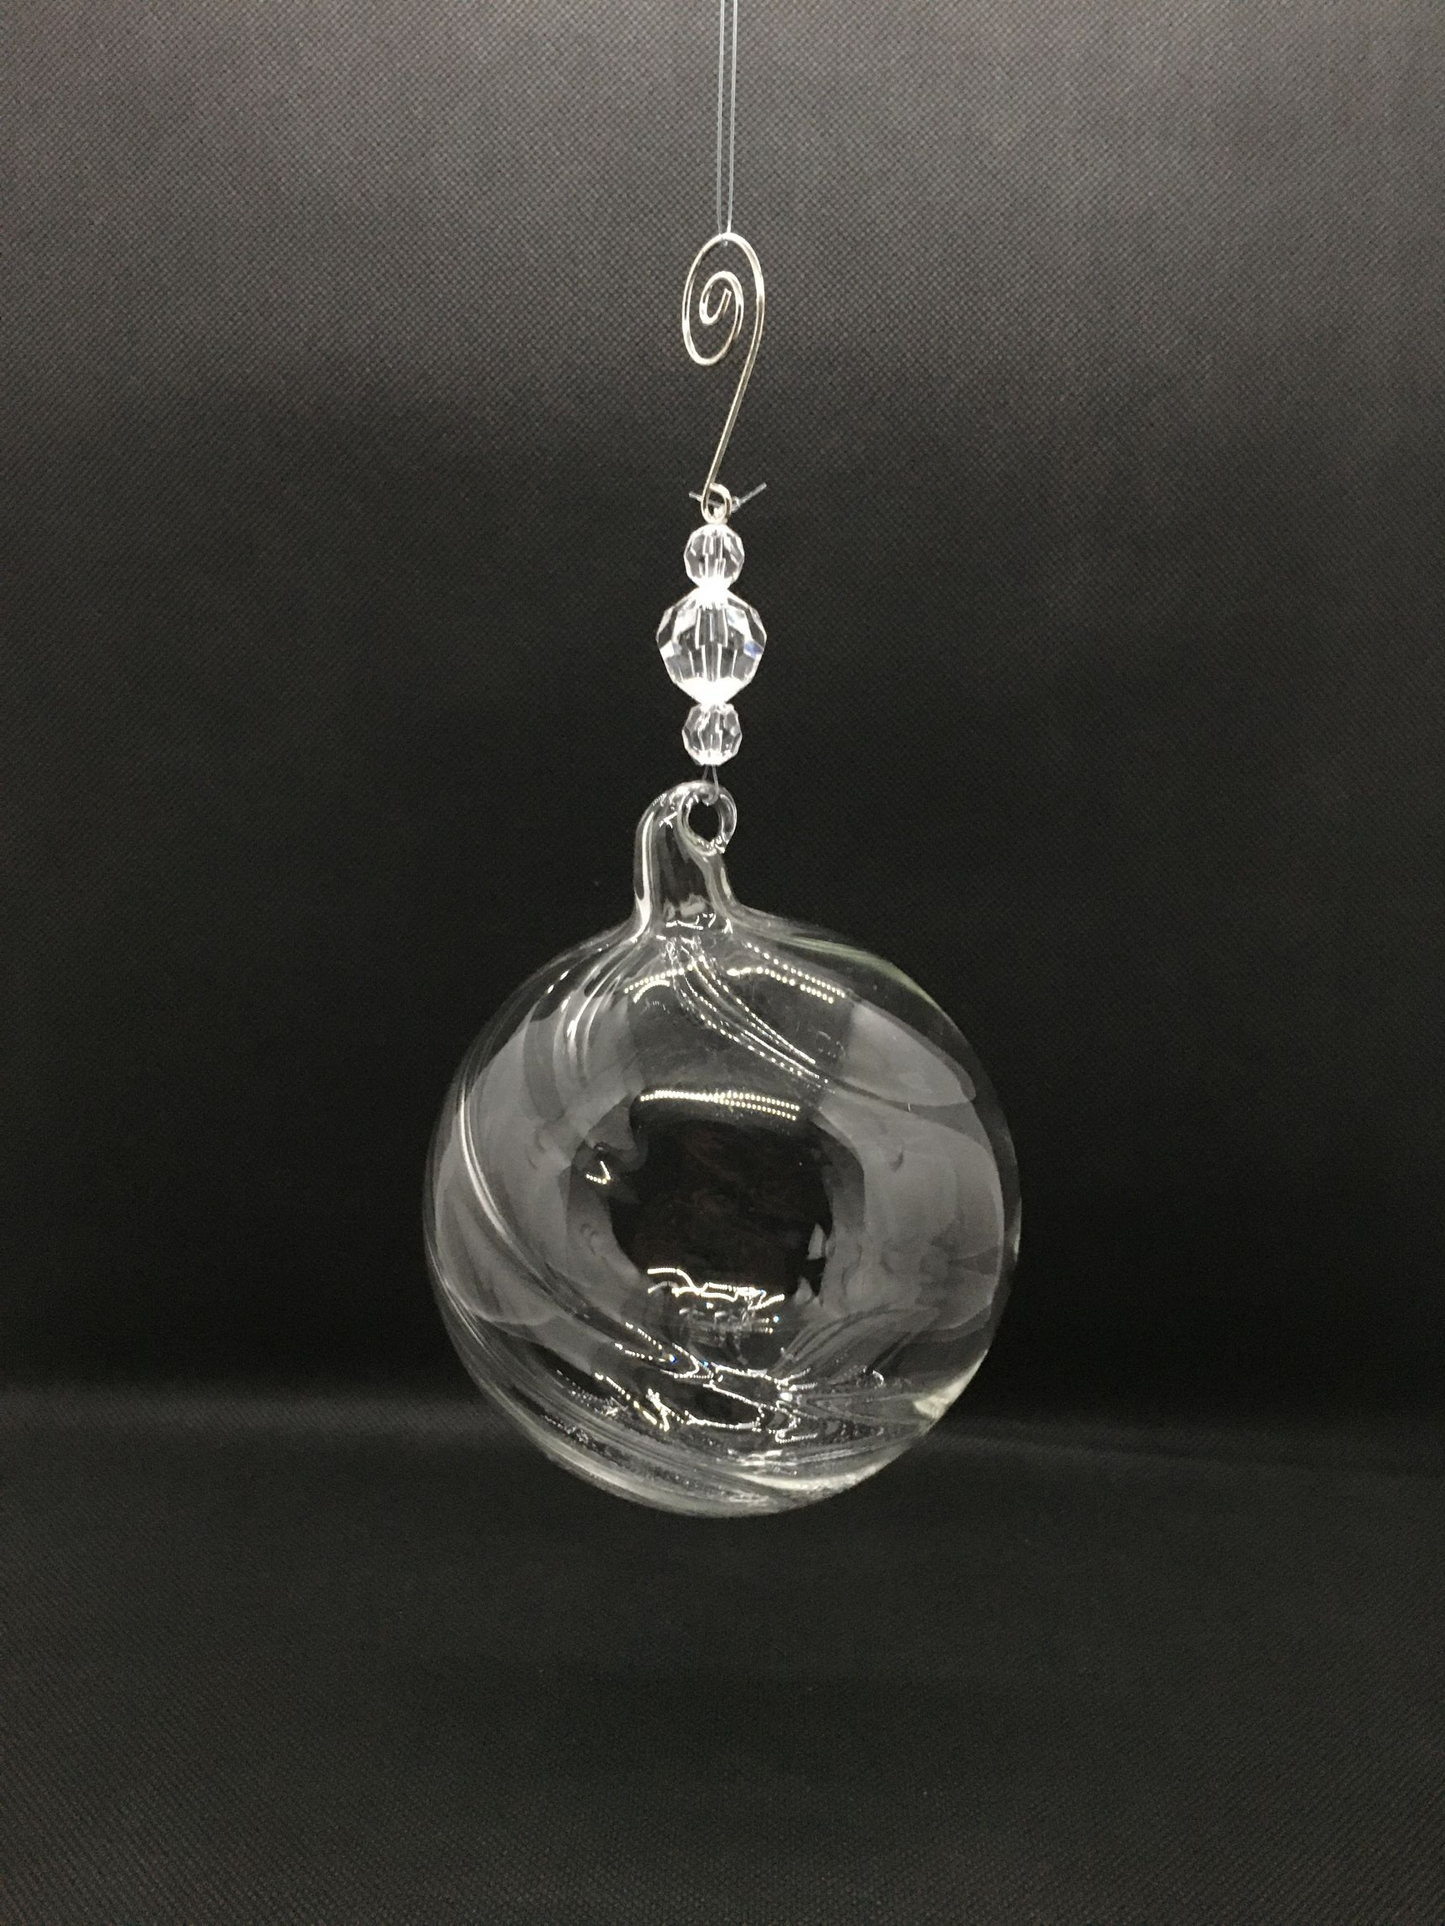 Sfera in vetro trasparente con sfere in plastica effetto diamante. Decorazione per albero di Natale. Dimensione: cm 10 x cm 16 h.